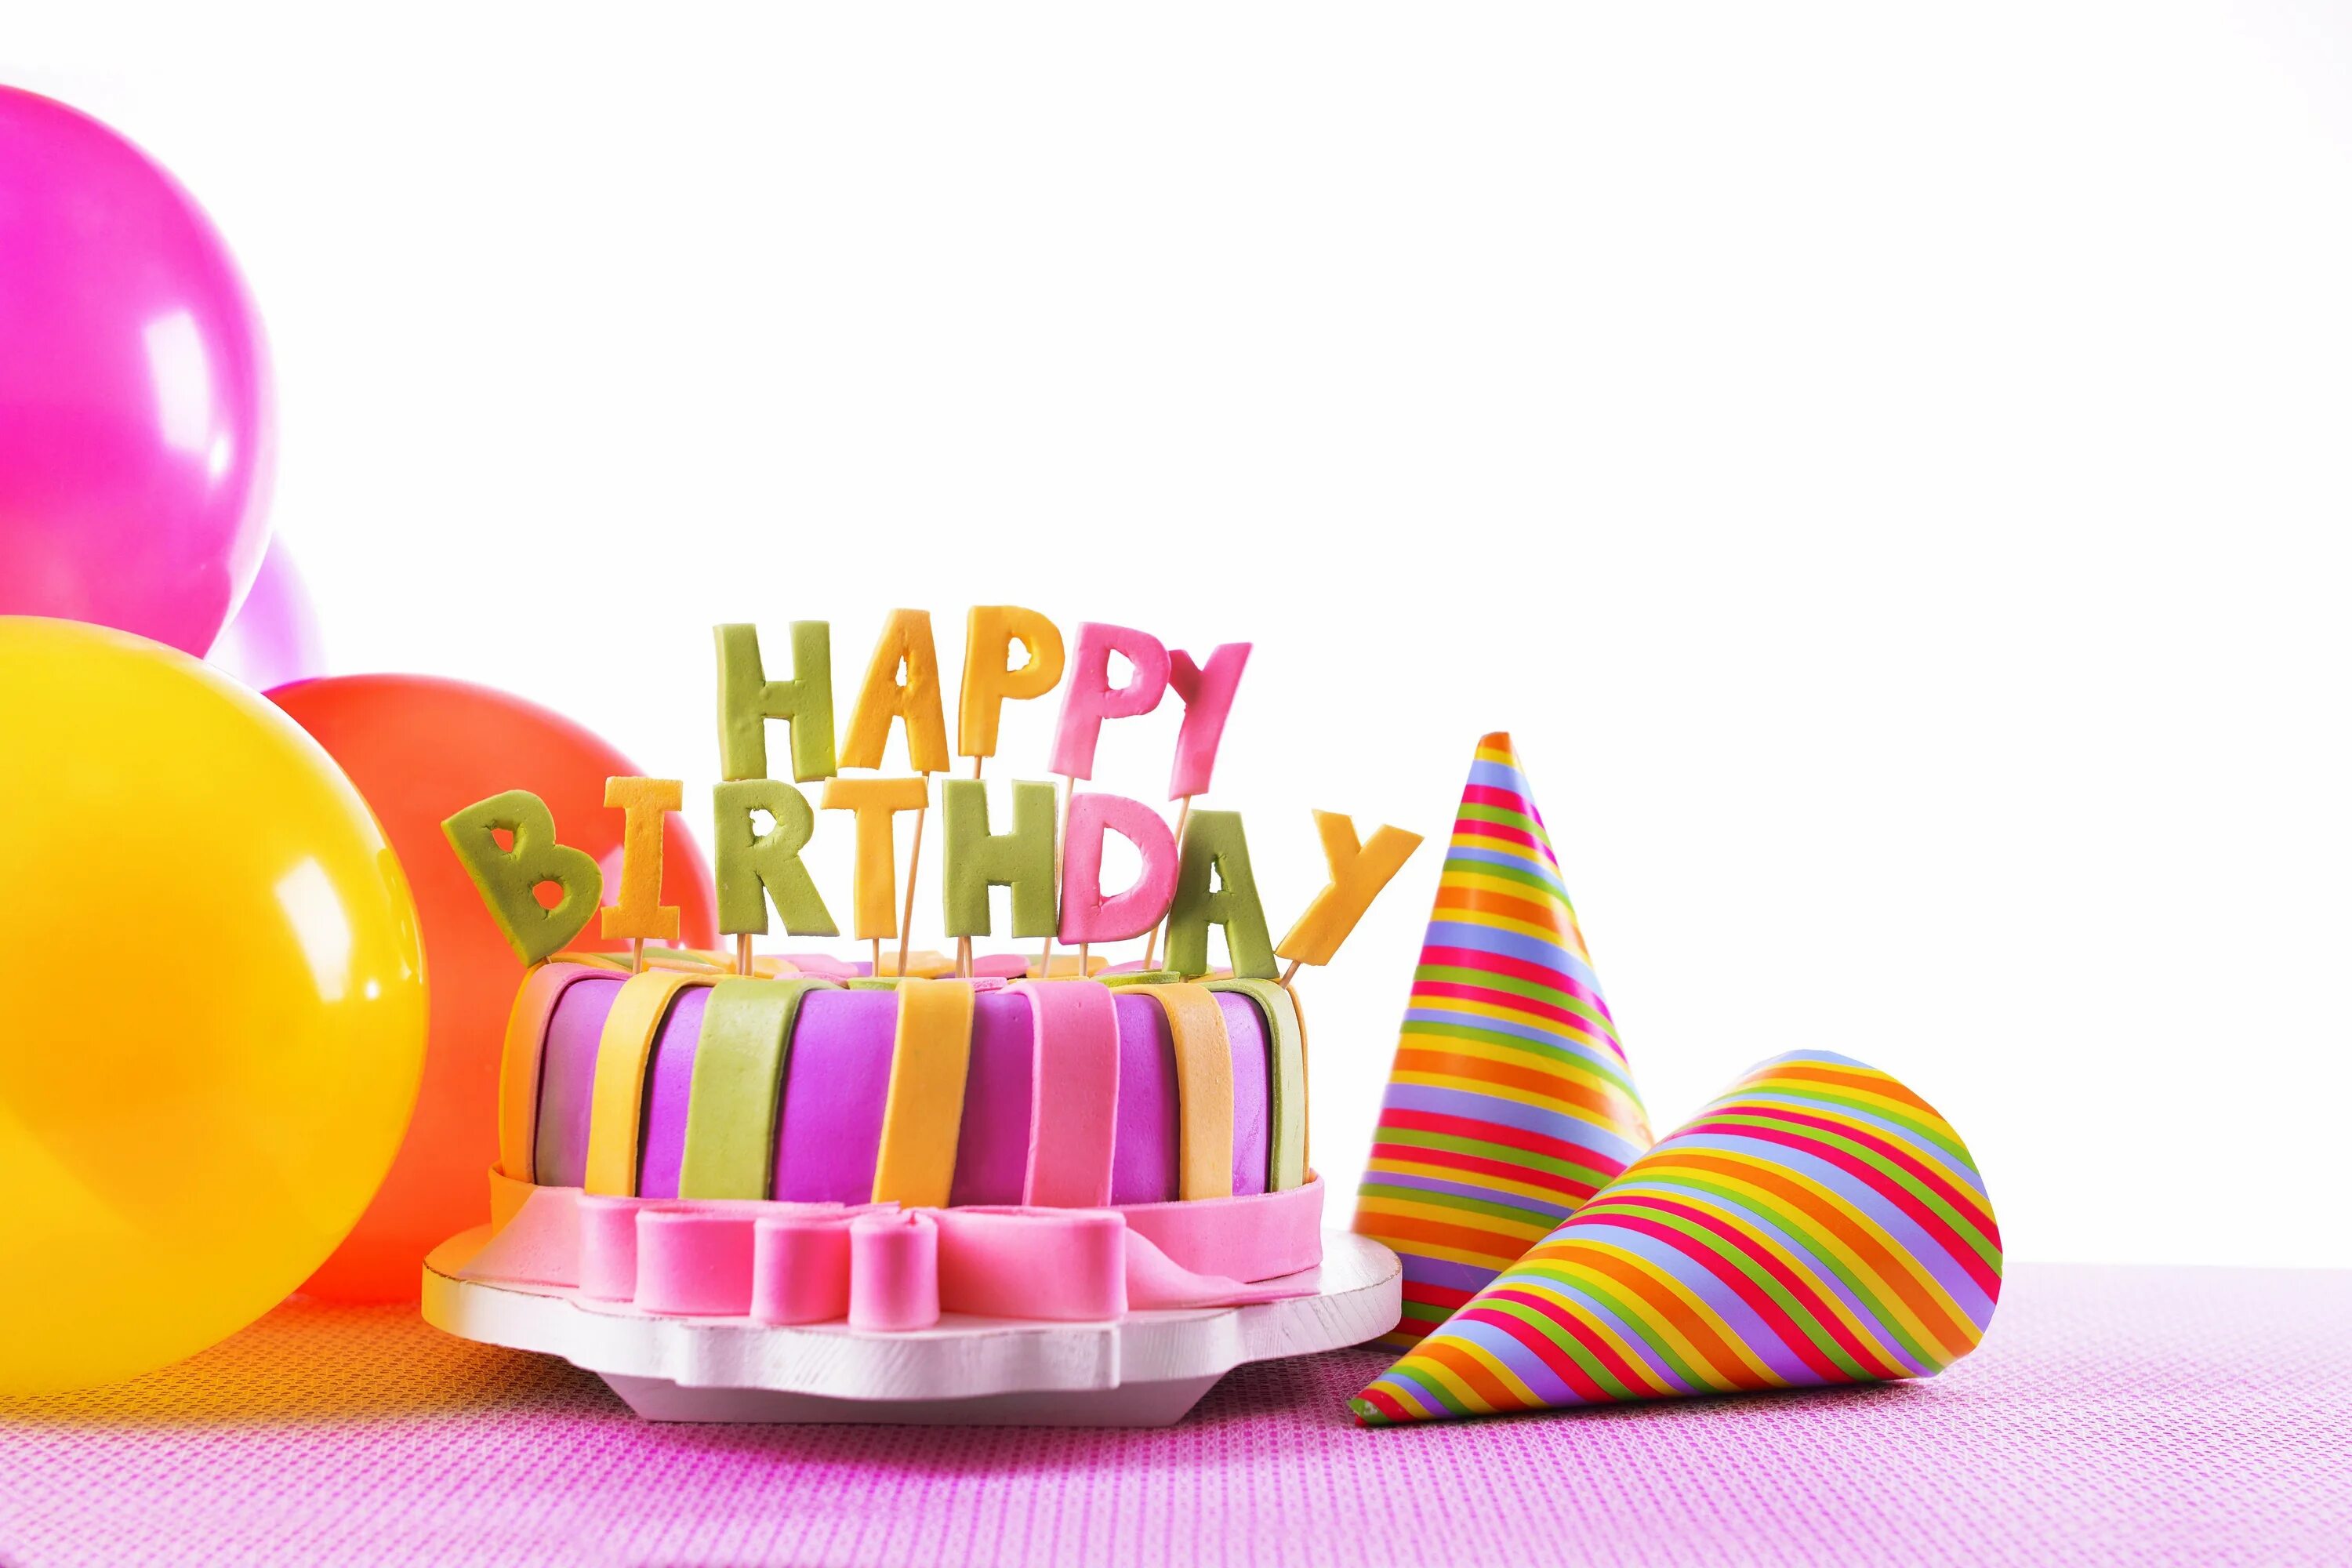 День рождение 27 12. С днем рождения. Тортик с днем рождения. Фон с днем рождения. С днём рождения КС тортиком.